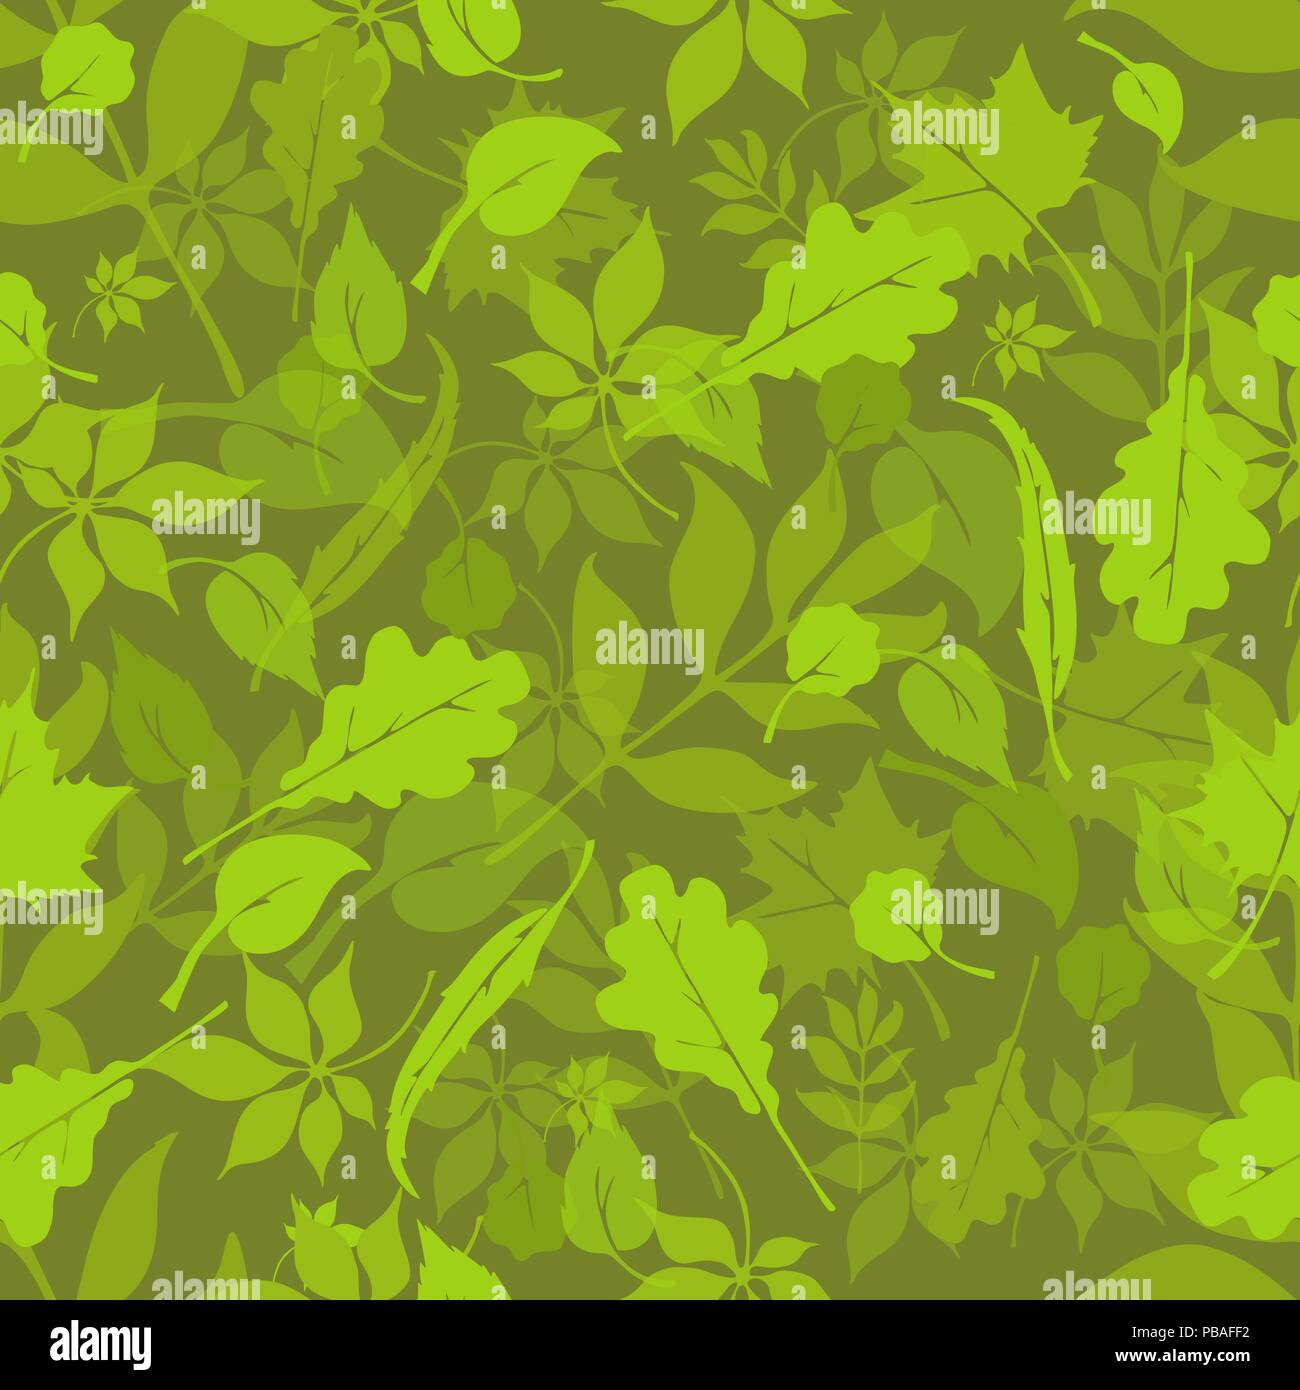 Foresta Russa Seamless Pattern Tessuto Camouflage Formato Quadrato Lascia La Texture Alberi Di Europeo Di Design Rovere Tiglio Betulla Castagno Willow Alde Immagine E Vettoriale Alamy